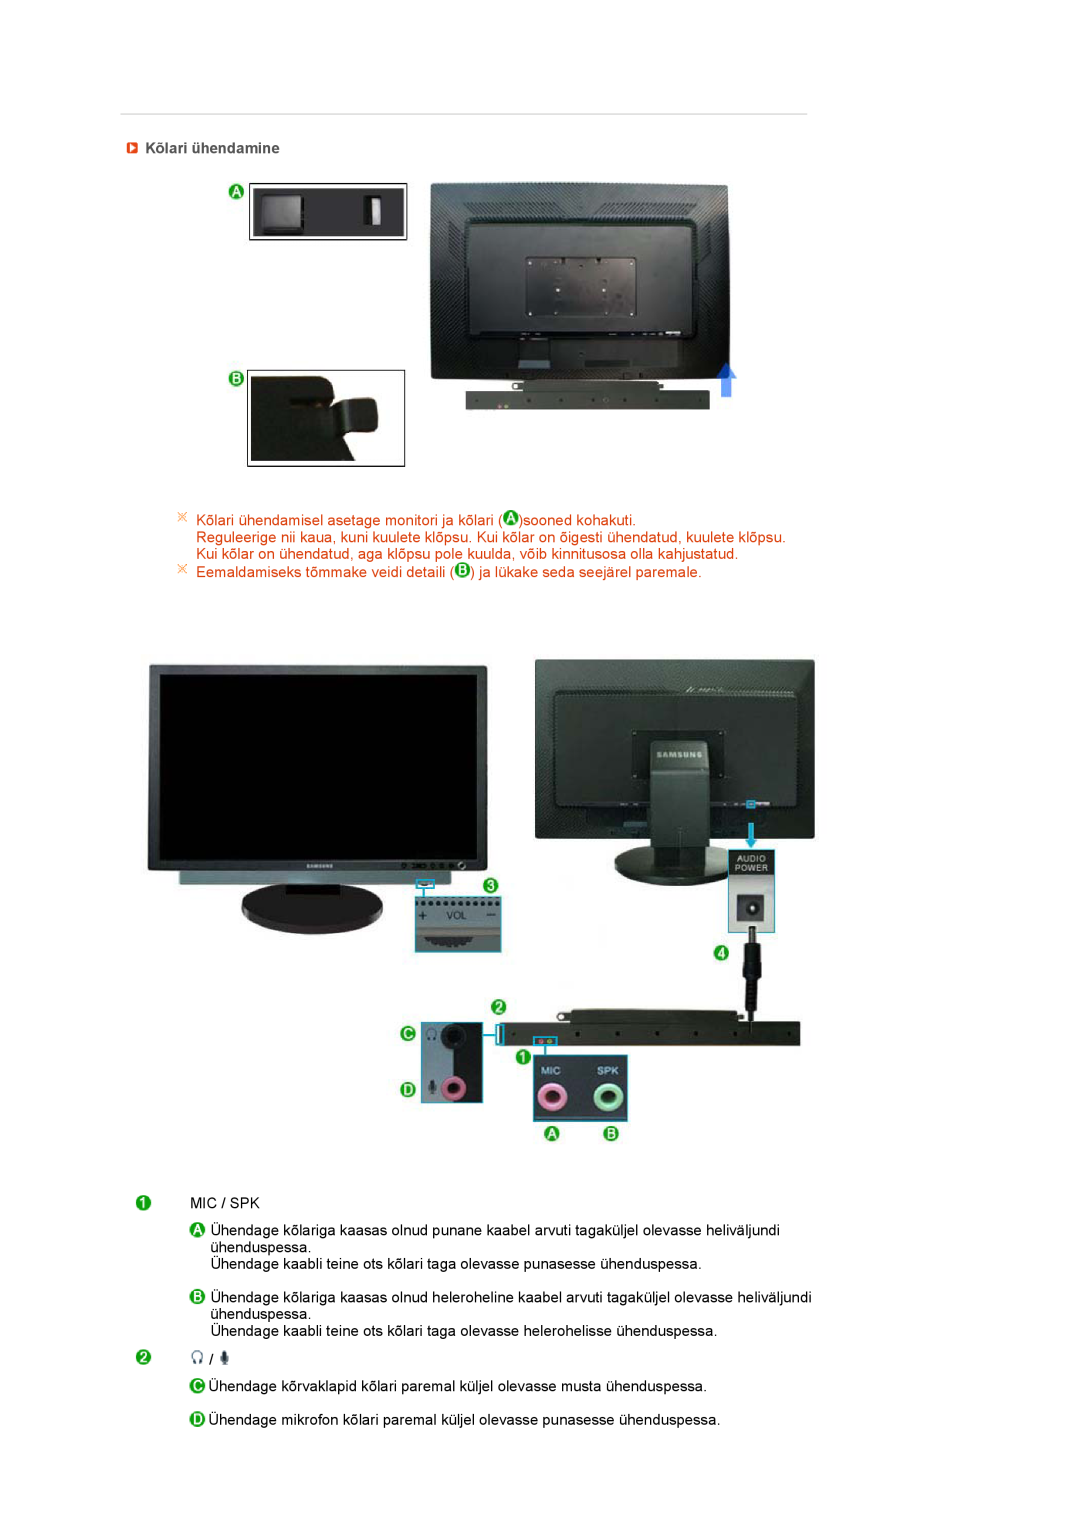 Samsung LS27HUBCB/EDC manual Kõlari ühendamine, Kõlari ühendamisel asetage monitori ja kõlari sooned kohakuti 